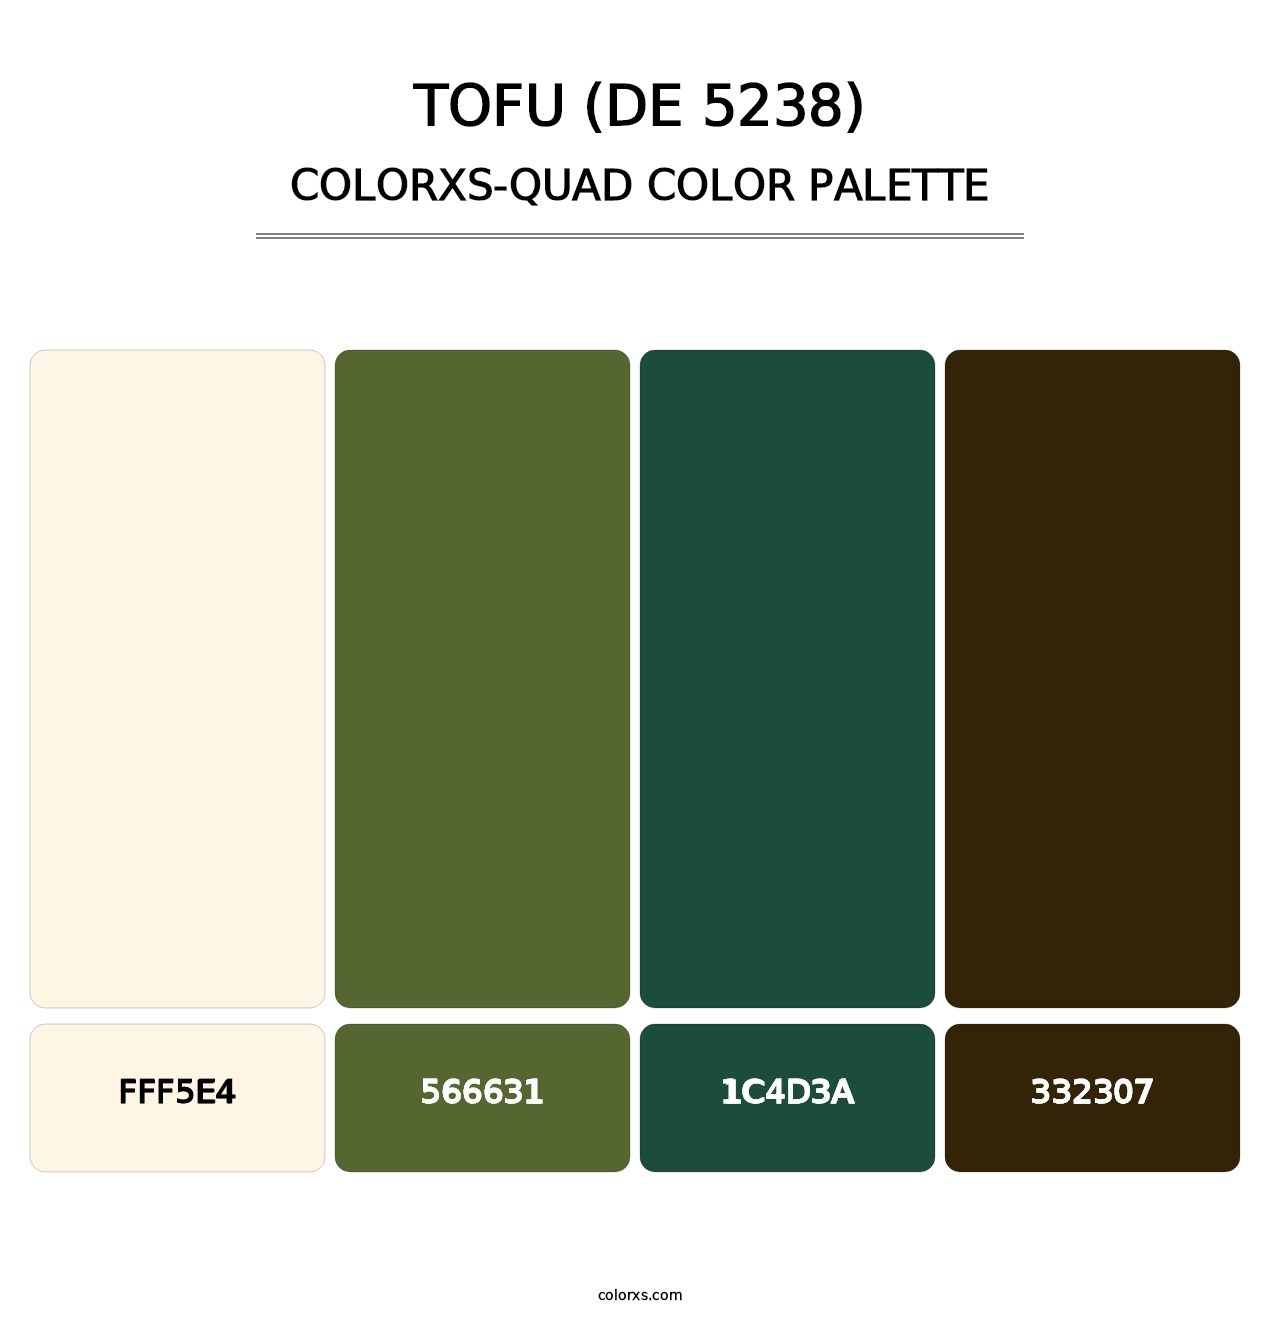 Tofu (DE 5238) - Colorxs Quad Palette